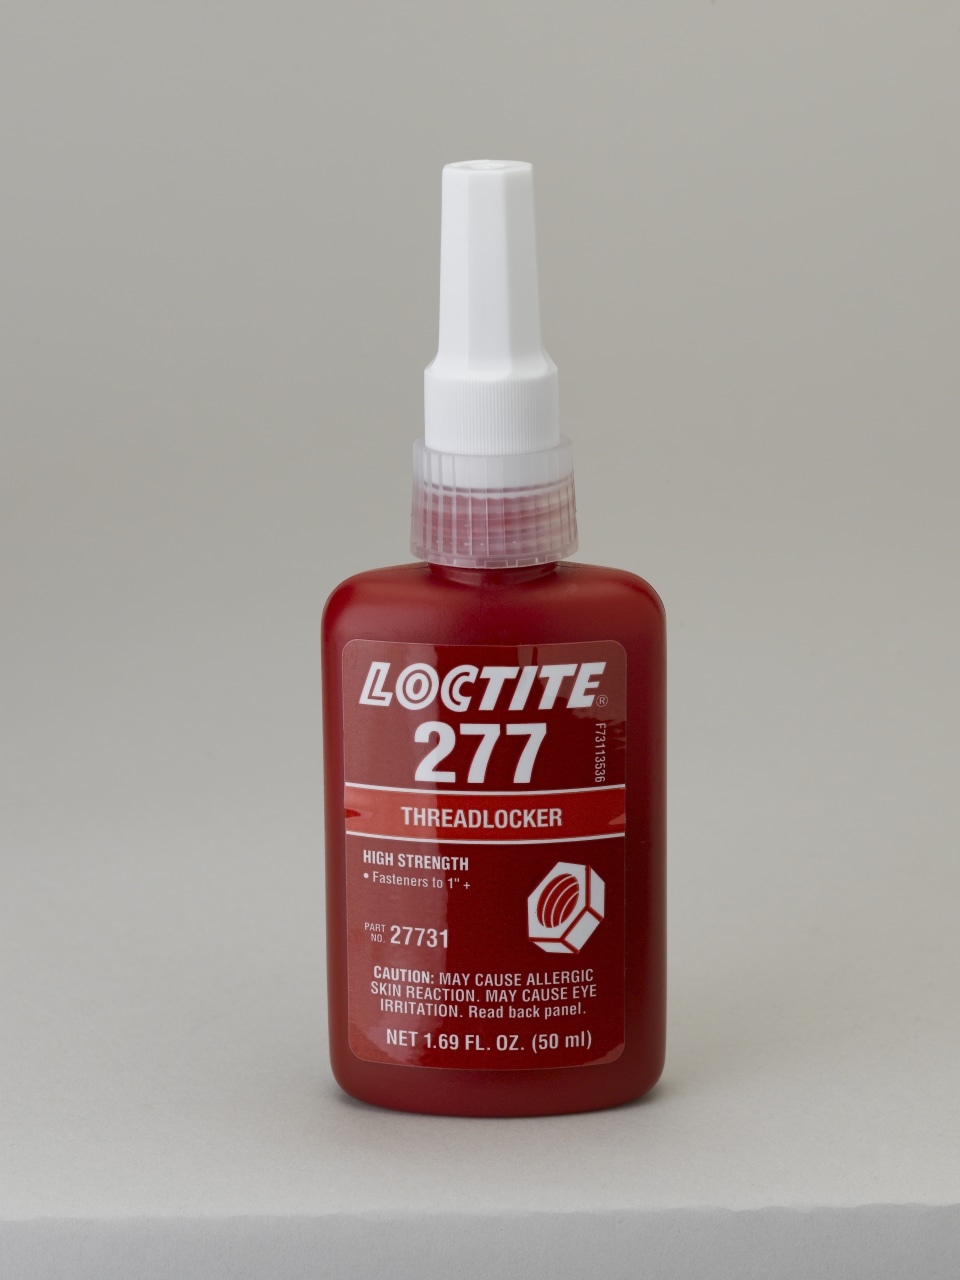 LOCTITE 277 50ML EN/FR/NL/DE, Frein filet Loctite Rouge Loctite 277, 50 ml